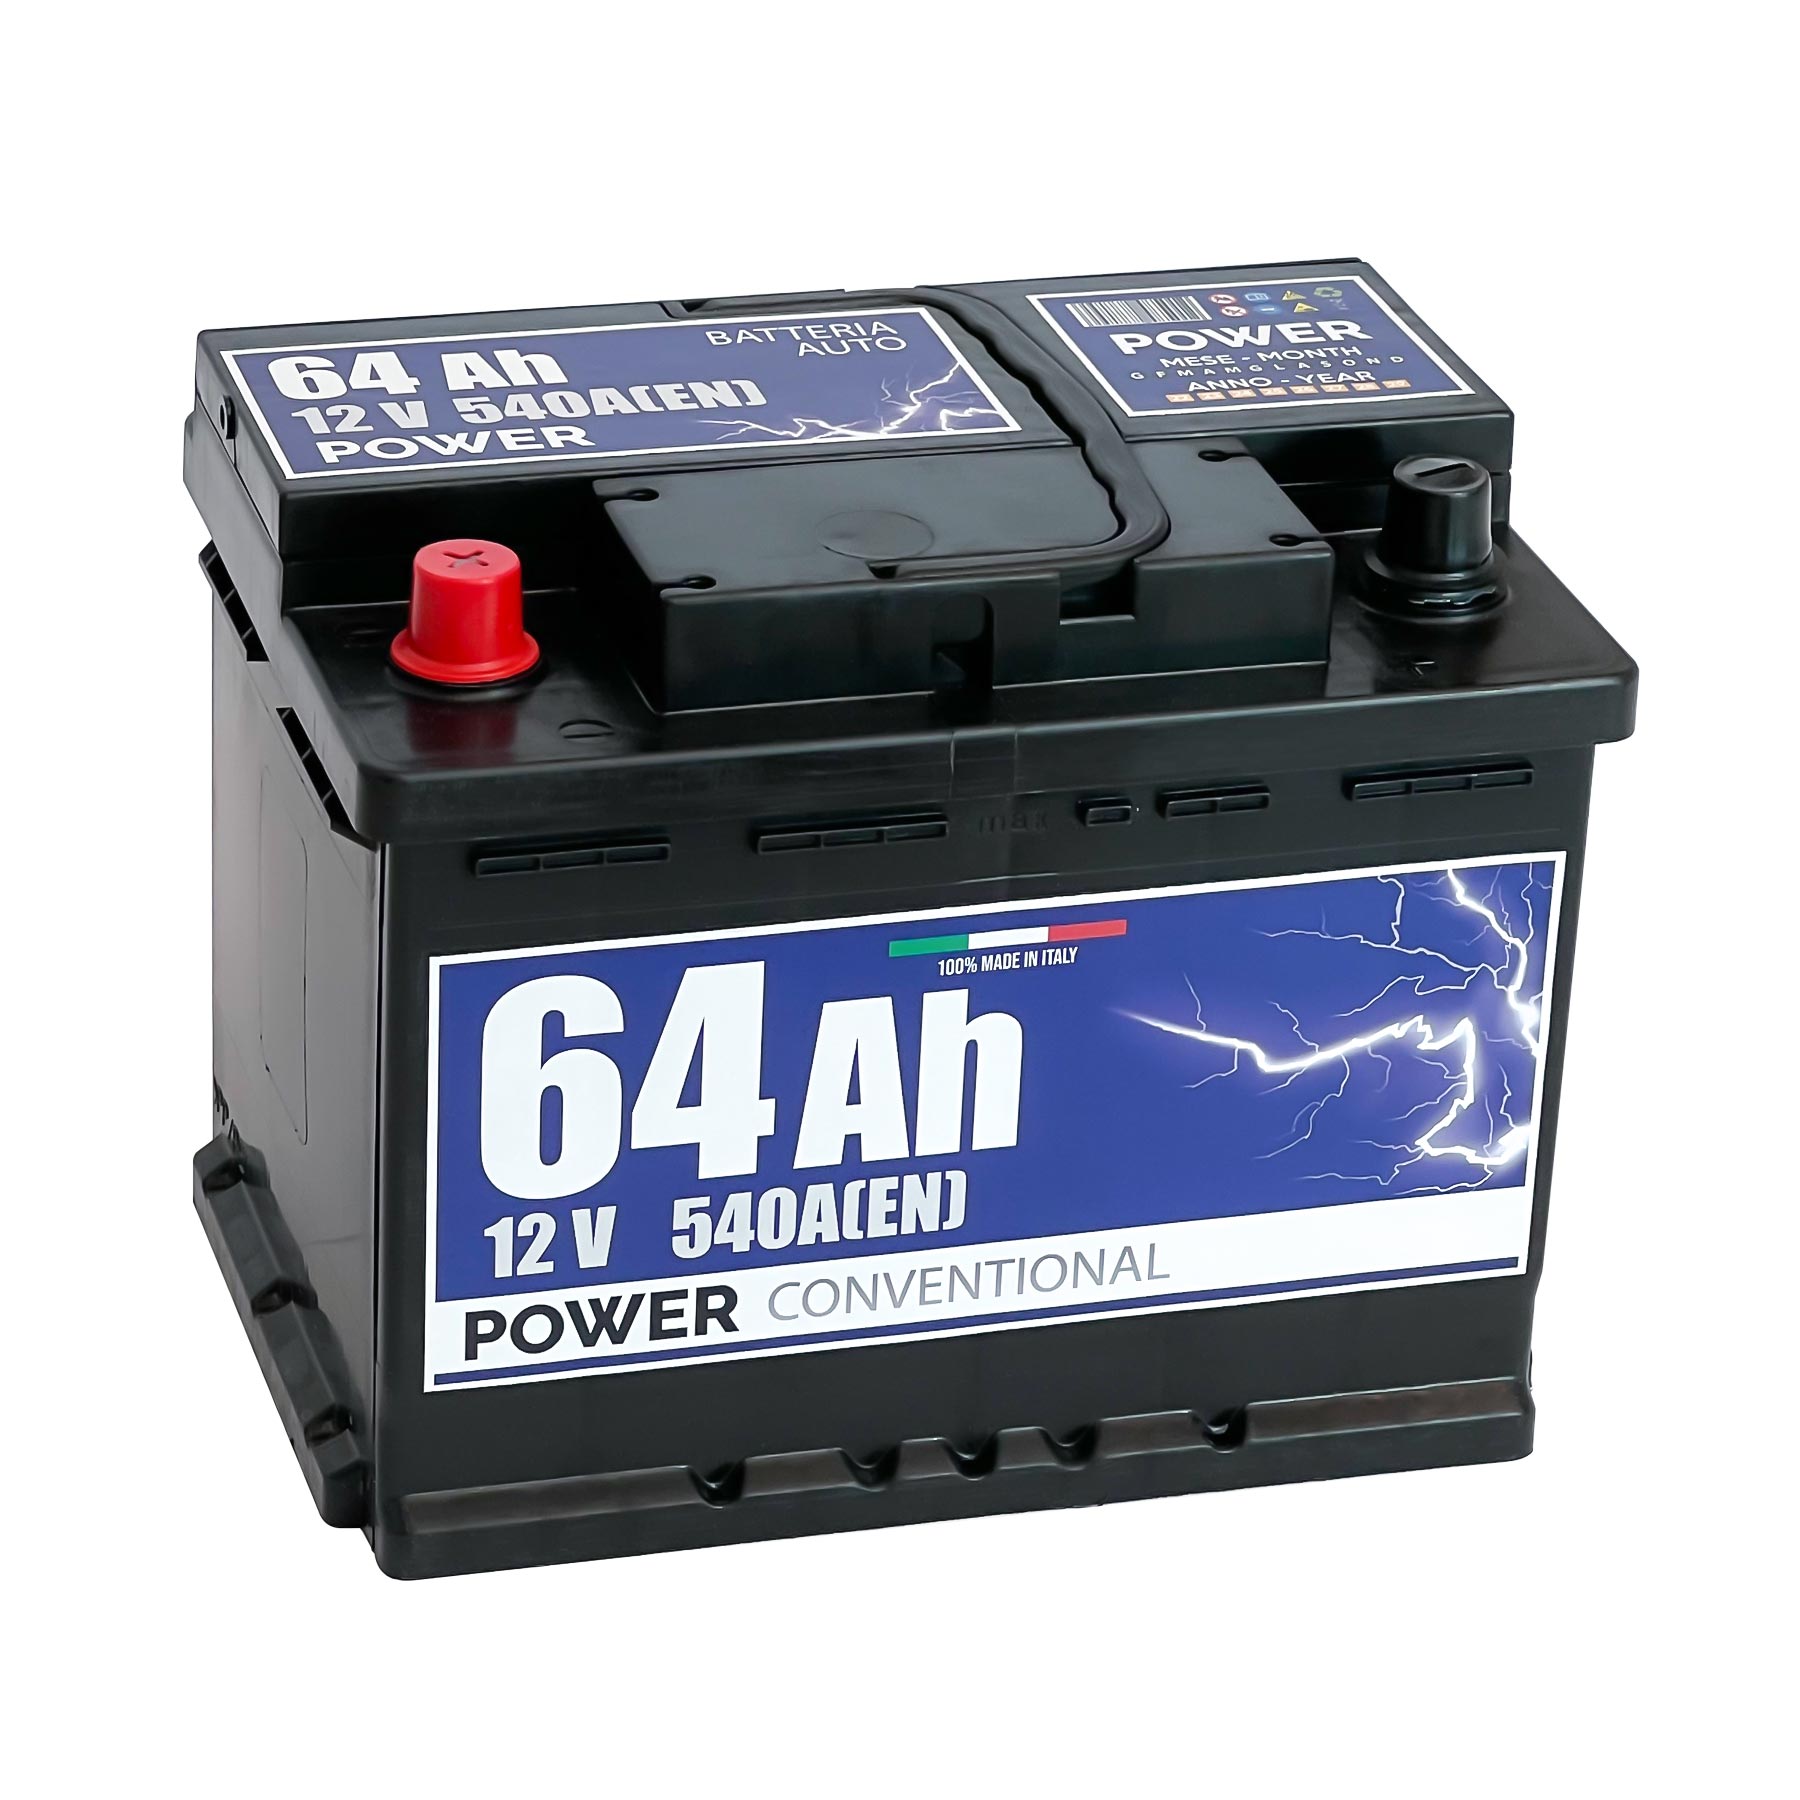 Batteria originale Power Conventional PB641, dimensioni 242 x 175 x 190, polo positivo a sinistra, 12 volt, 64 amperora, 540 ampere. Batteria per auto e veicoli leggeri.